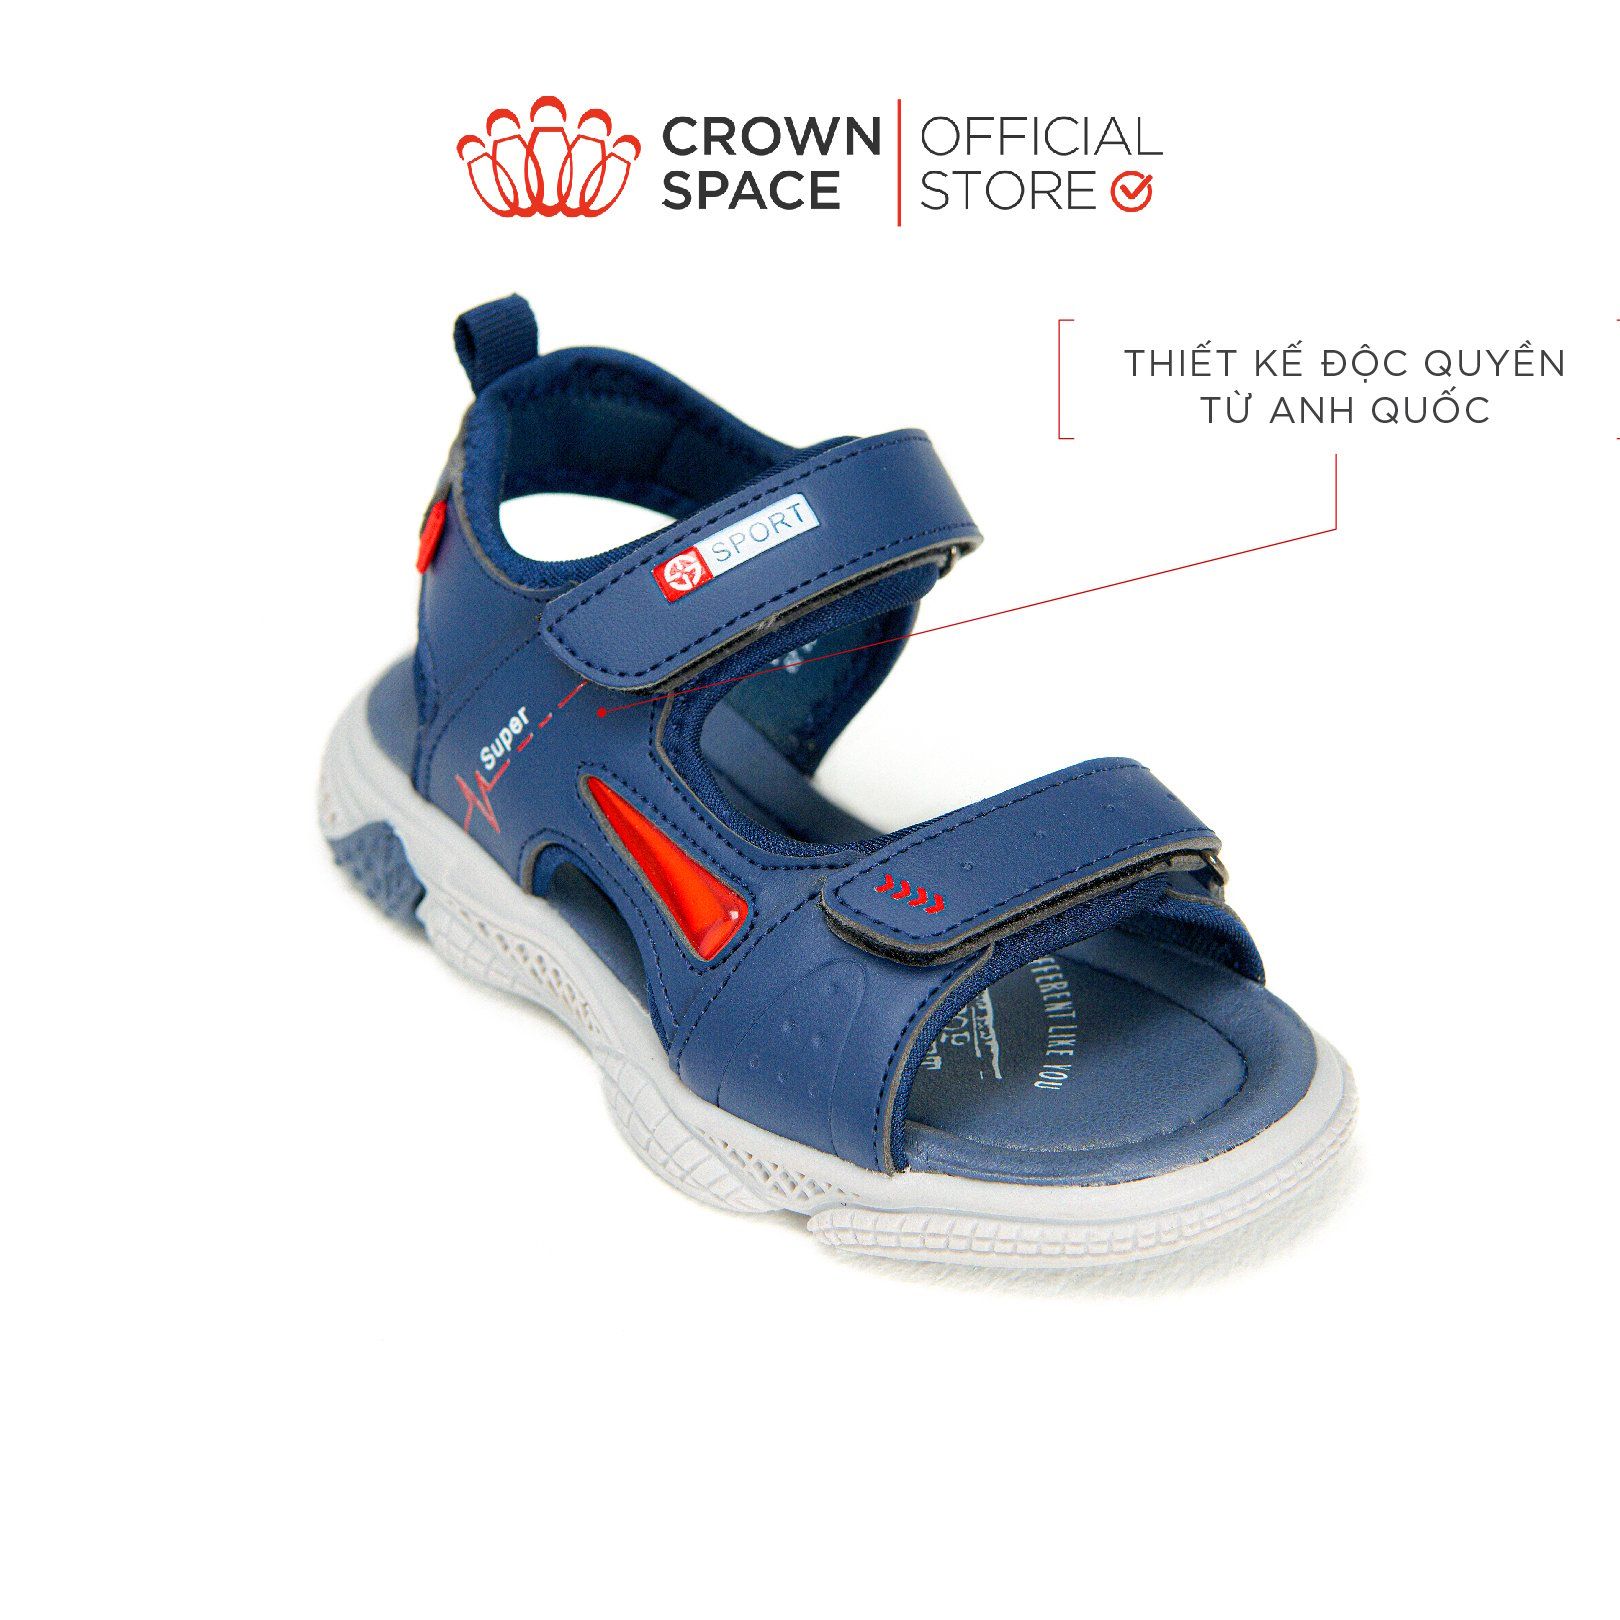  Dép Quai Hậu Sandals Trẻ Em Cao Cấp Chính Hãng Crown Space Dành Cho Bé Trai Đi Chơi Đi Học CRUK556 Size 26 - 36 